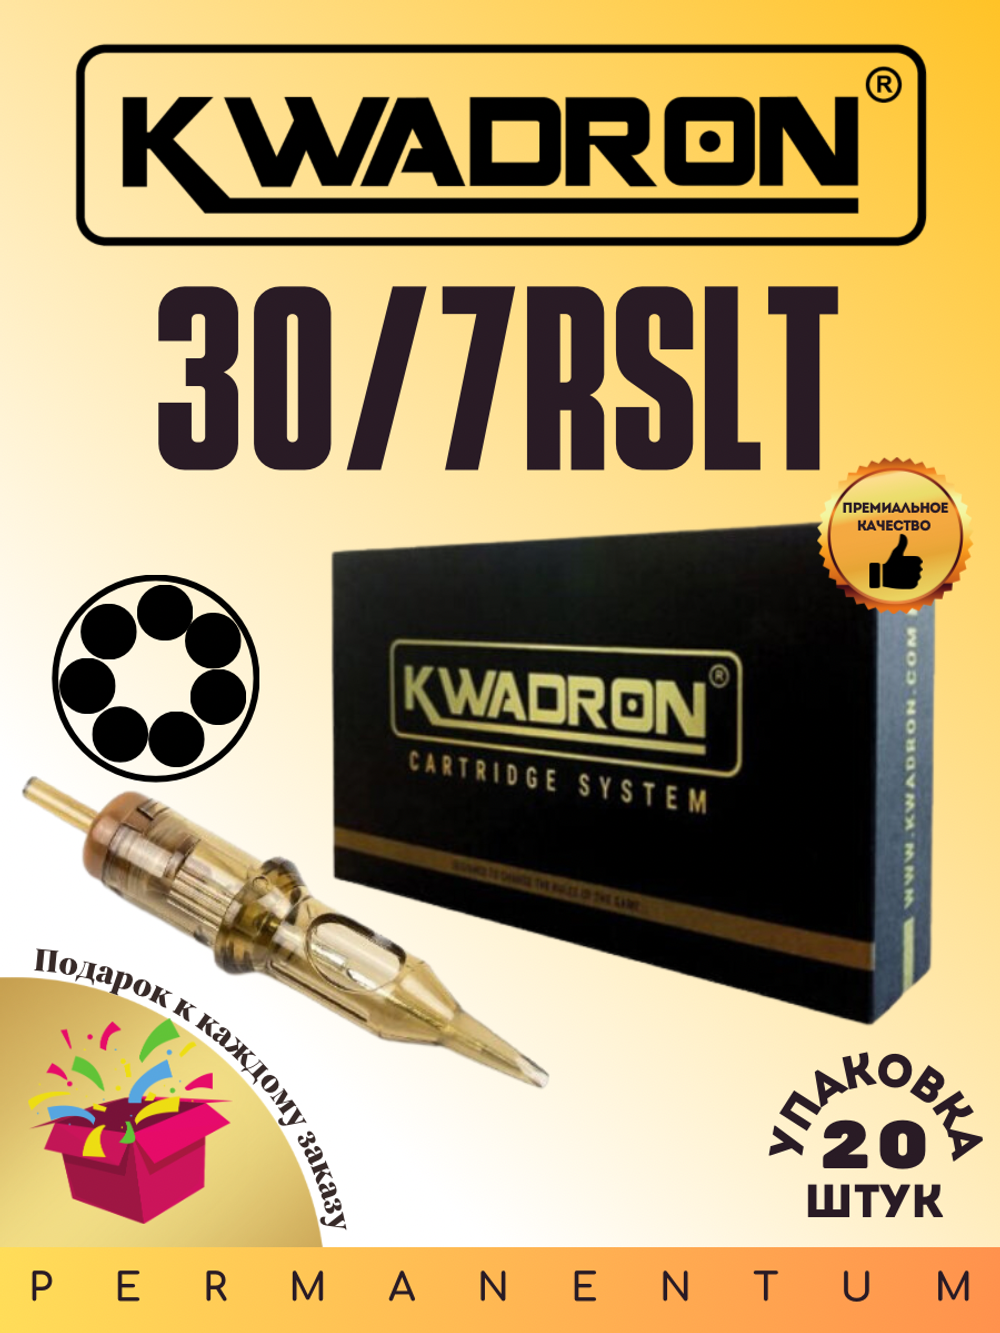 Картридж для татуажа "KWADRON Round Liner 30/7RSLT" упаковка 20 шт.